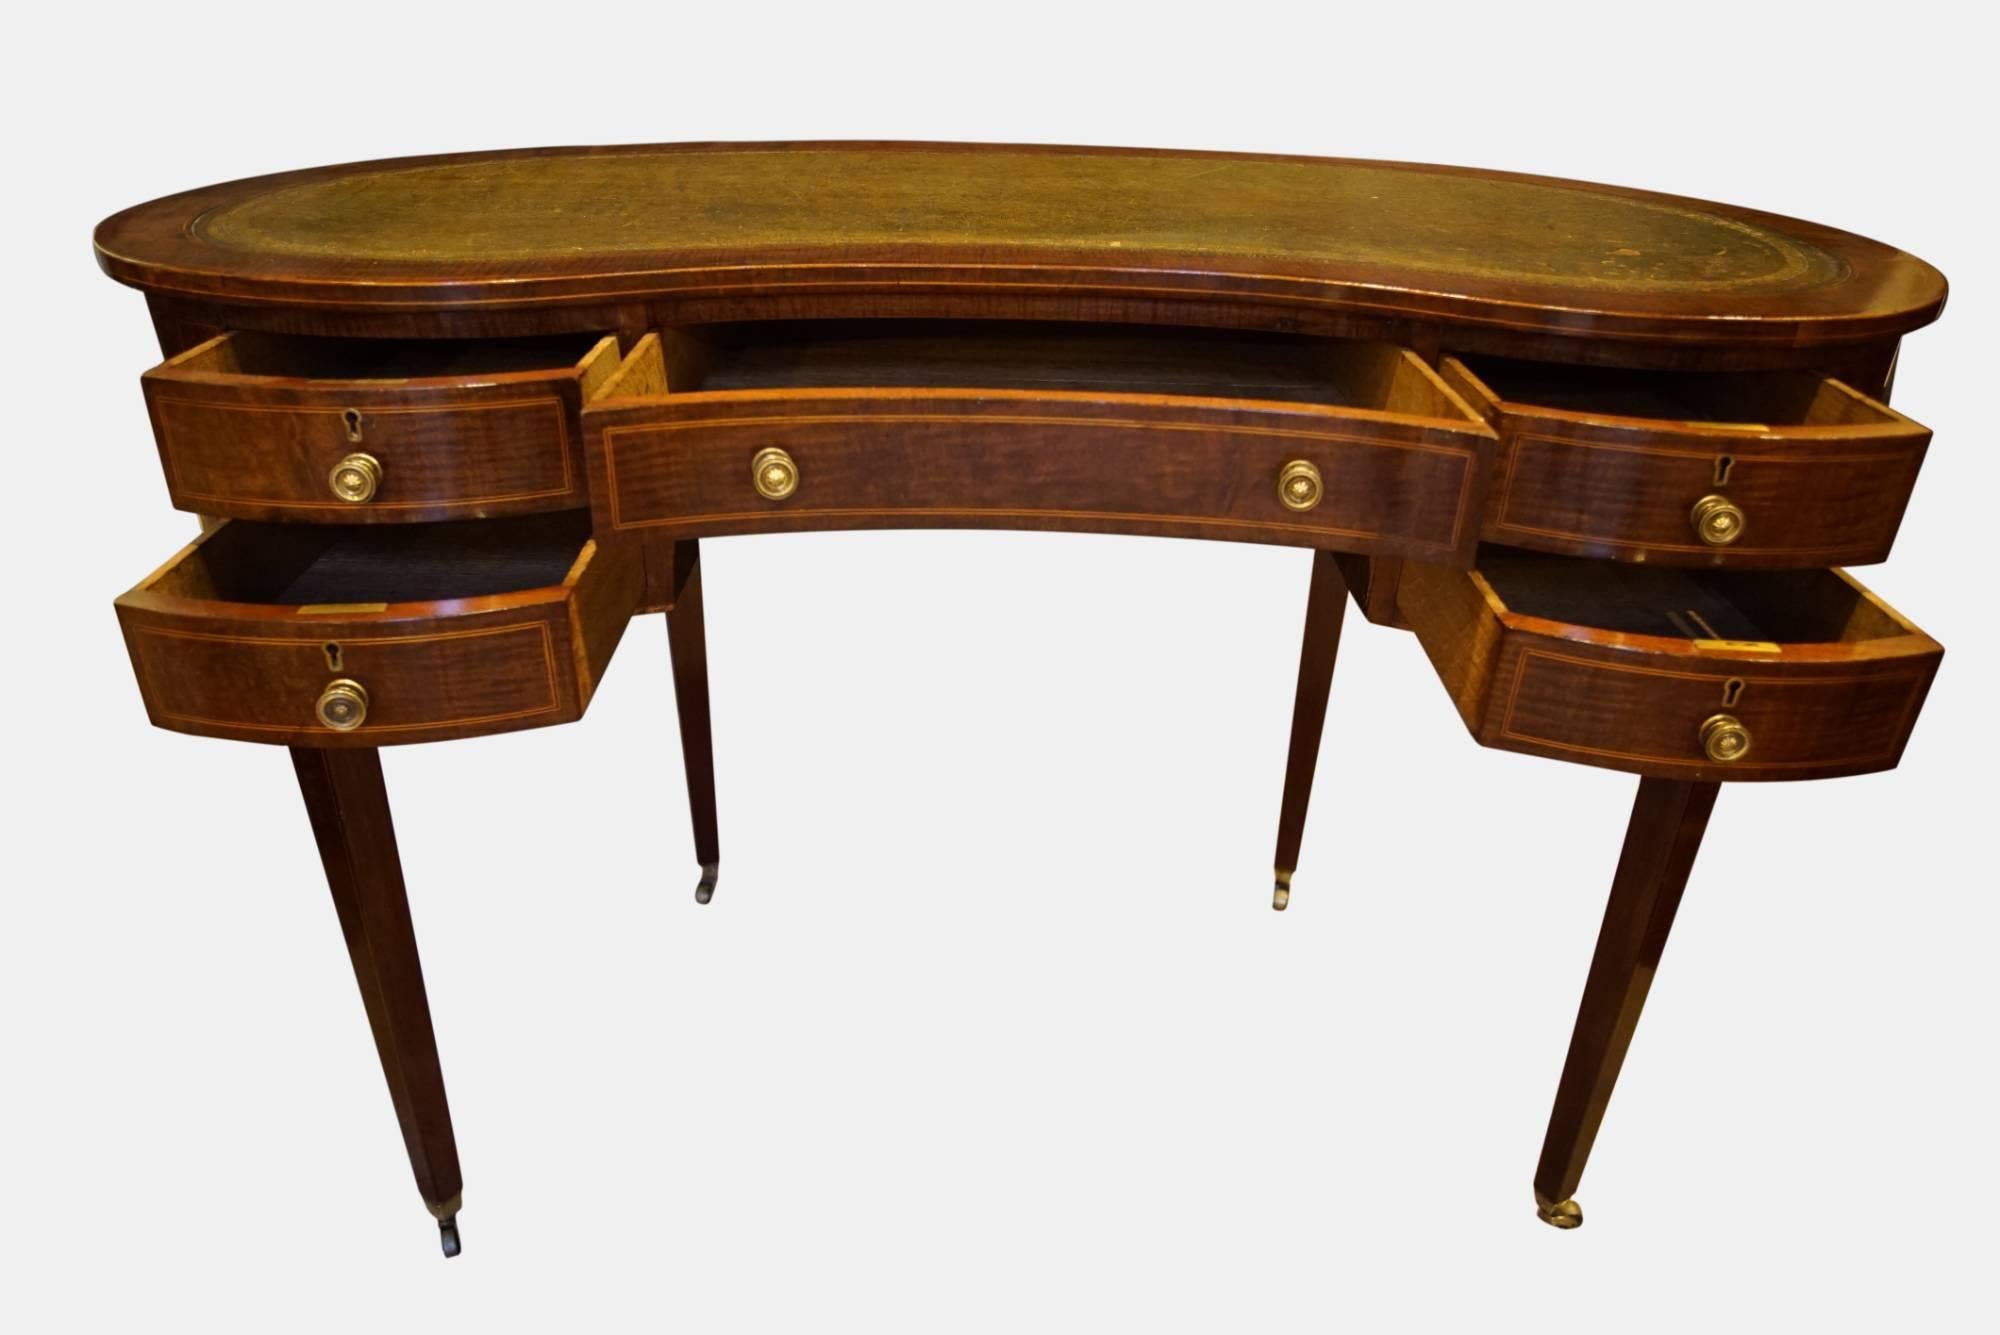 A mahogany kidney shaped desk

circa 1900.